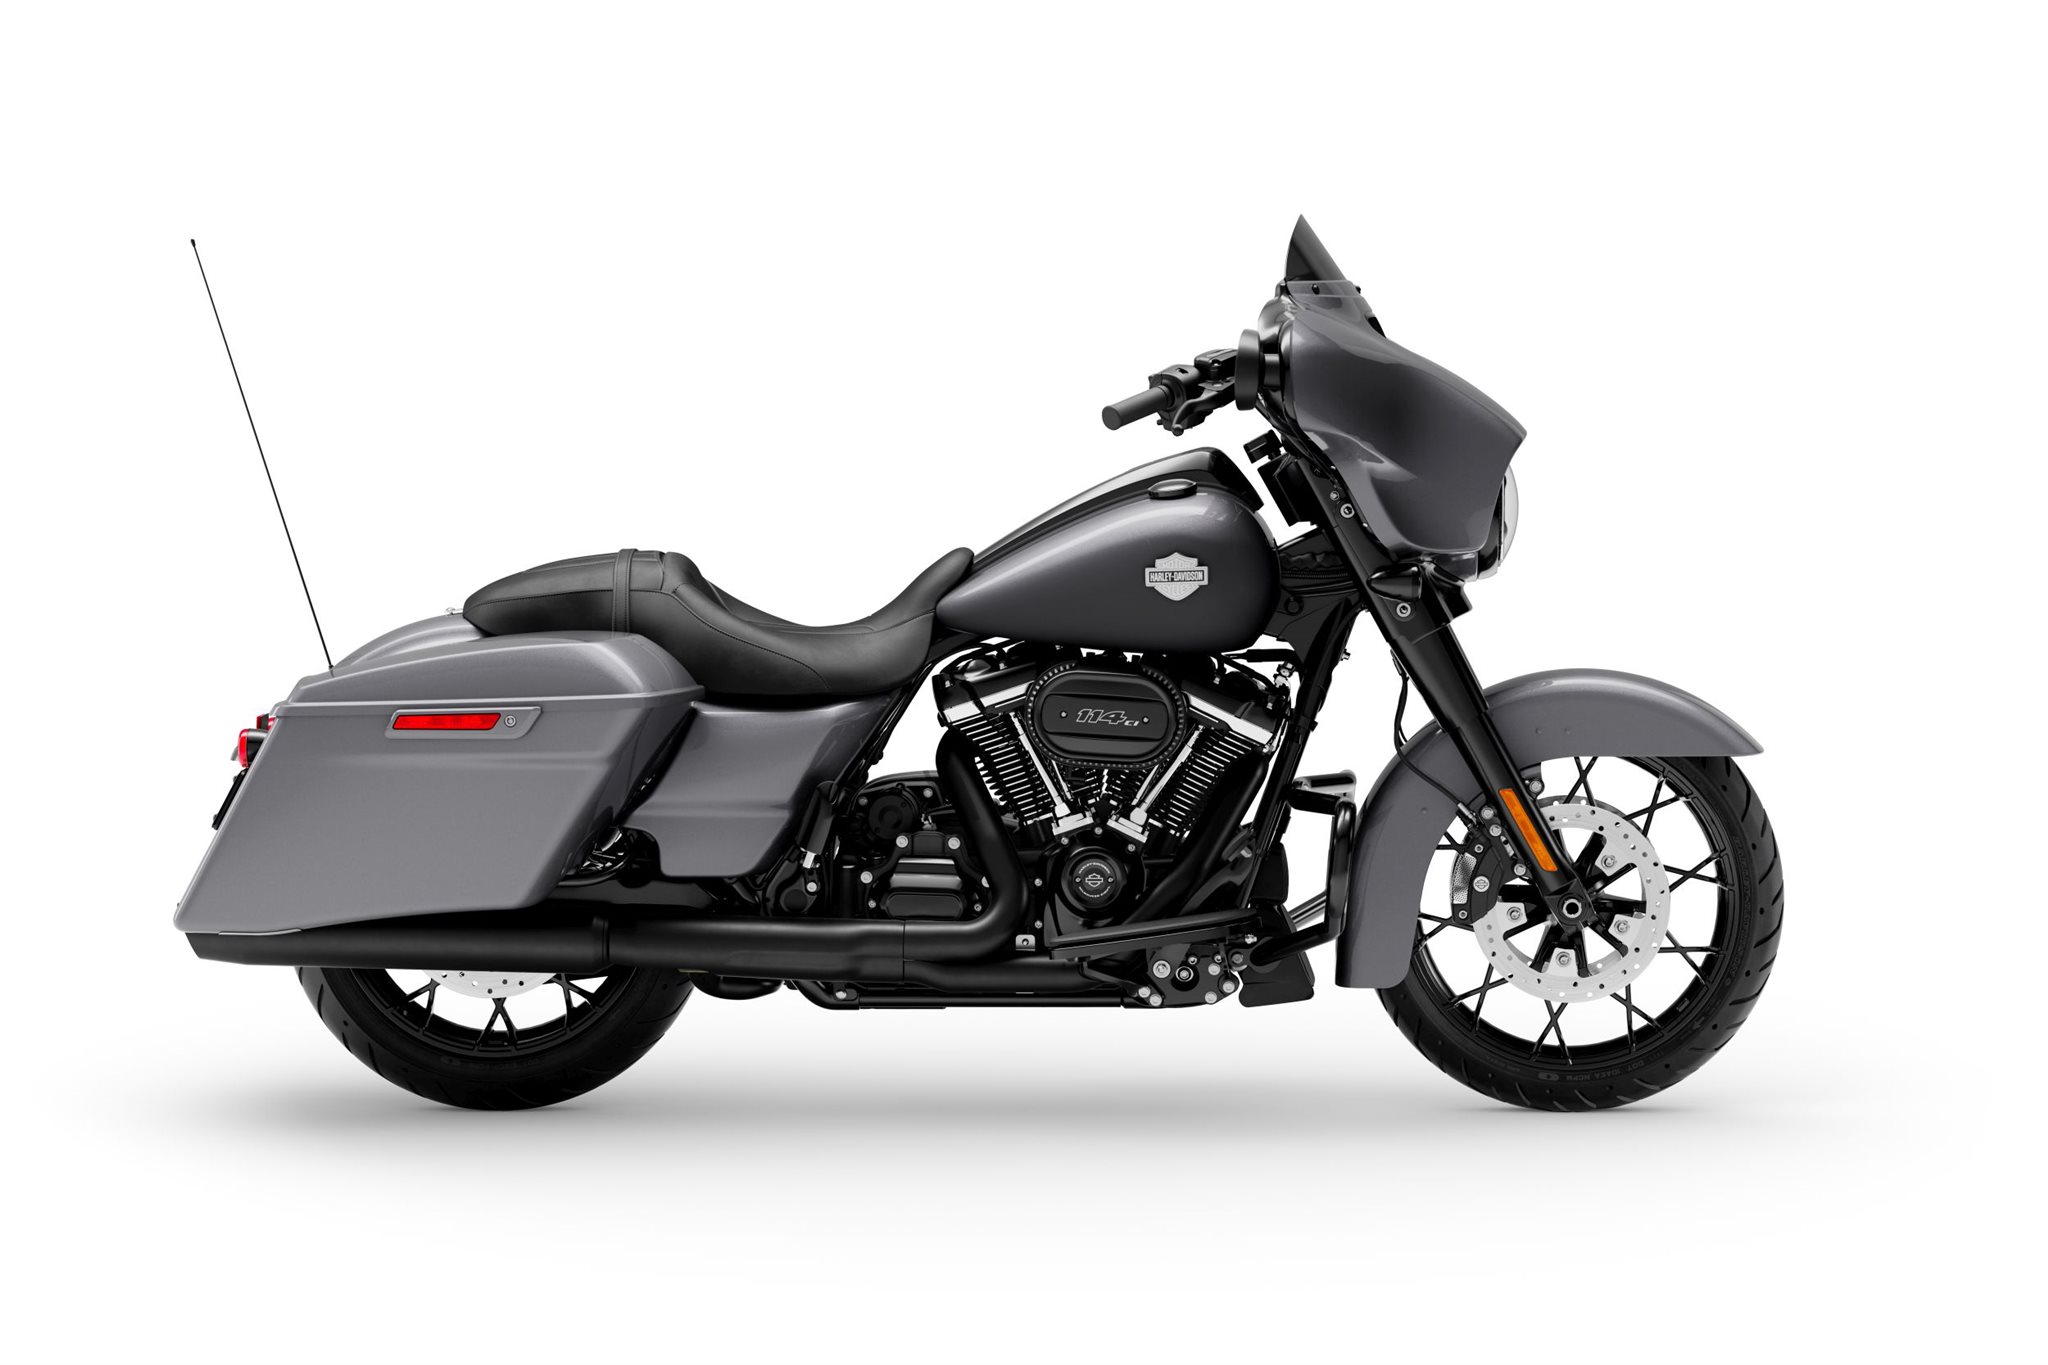 Motorrad Vergleich Harley Davidson Touring Street Glide Special Flhxs 2020 Vs Harley Davidson Touring Street Glide Special Flhxs 2021